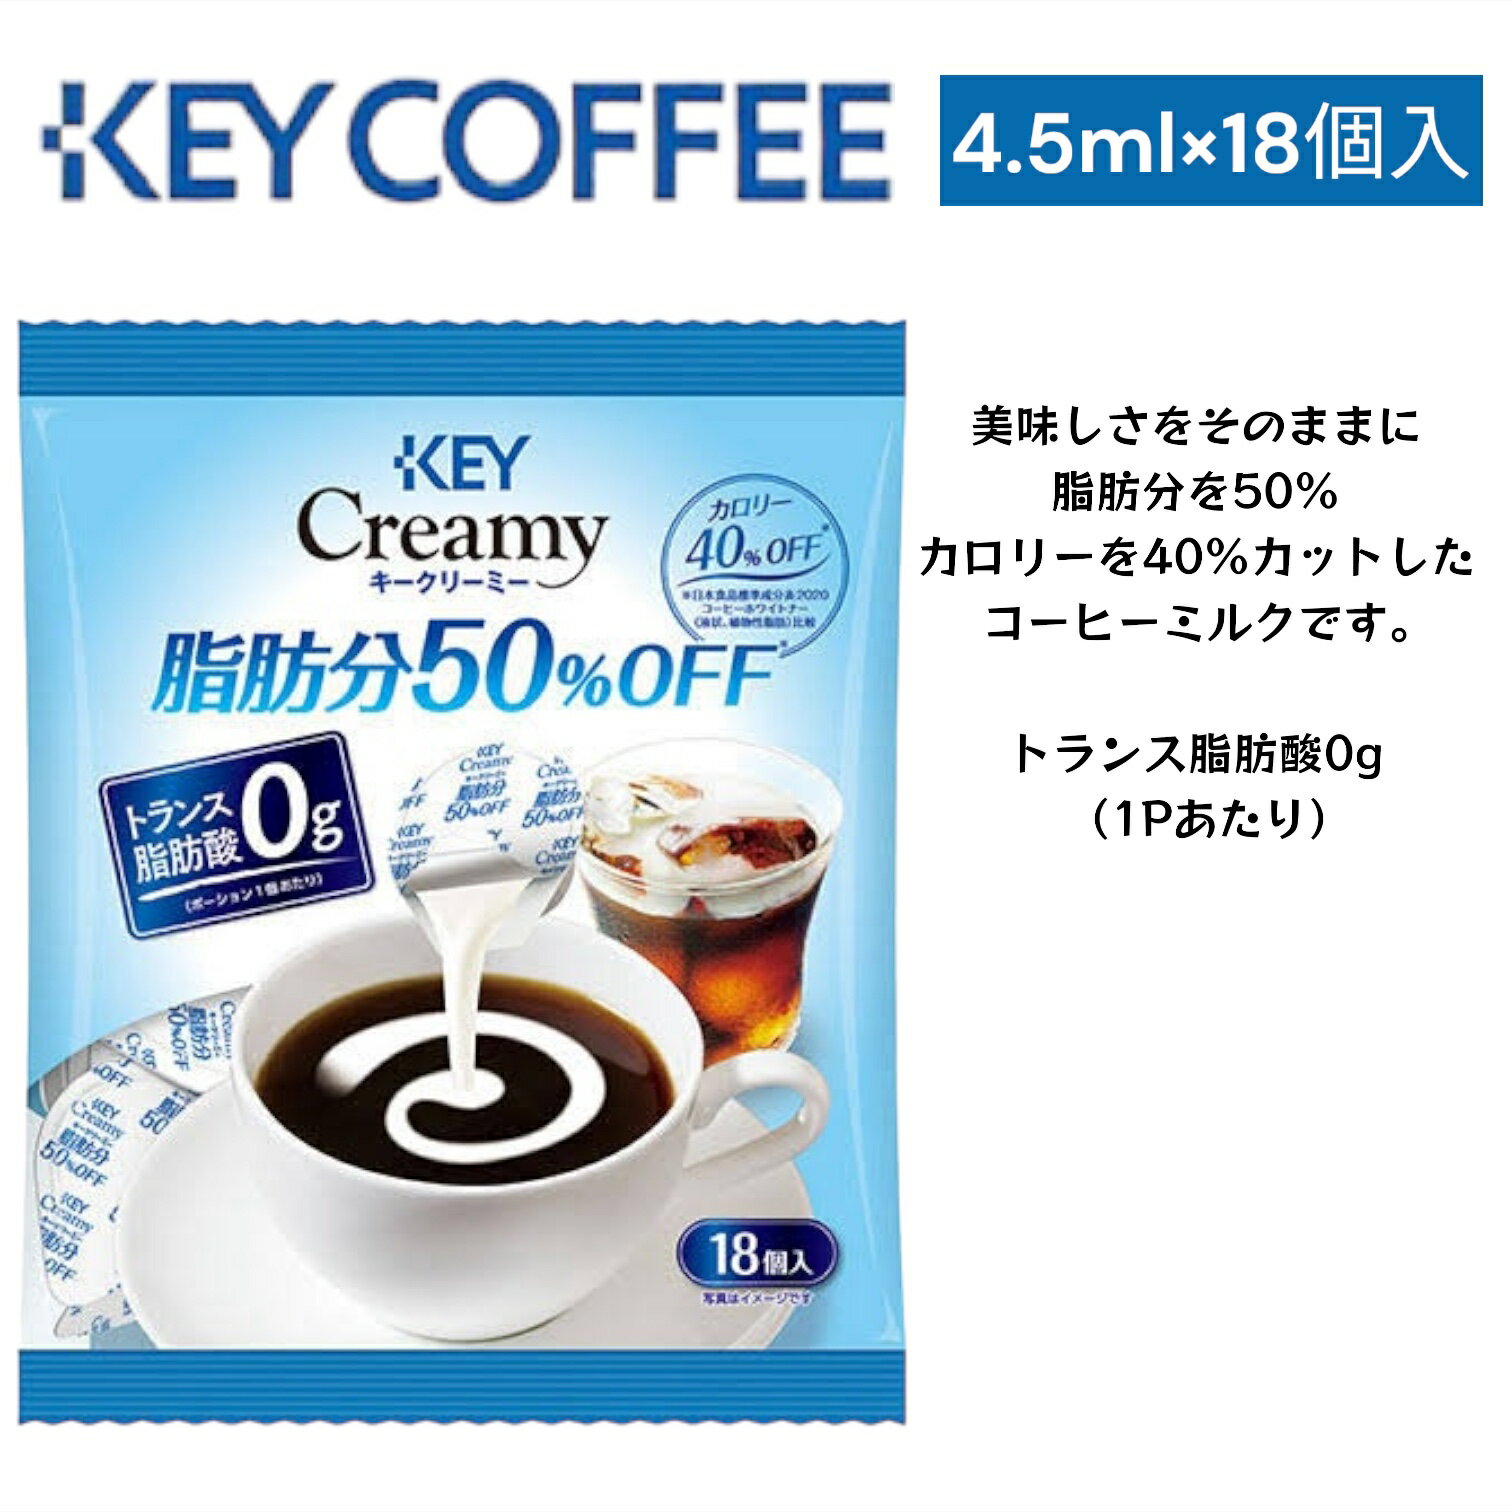 KEY COFFEE キークリーミー 4.5ml×18個入